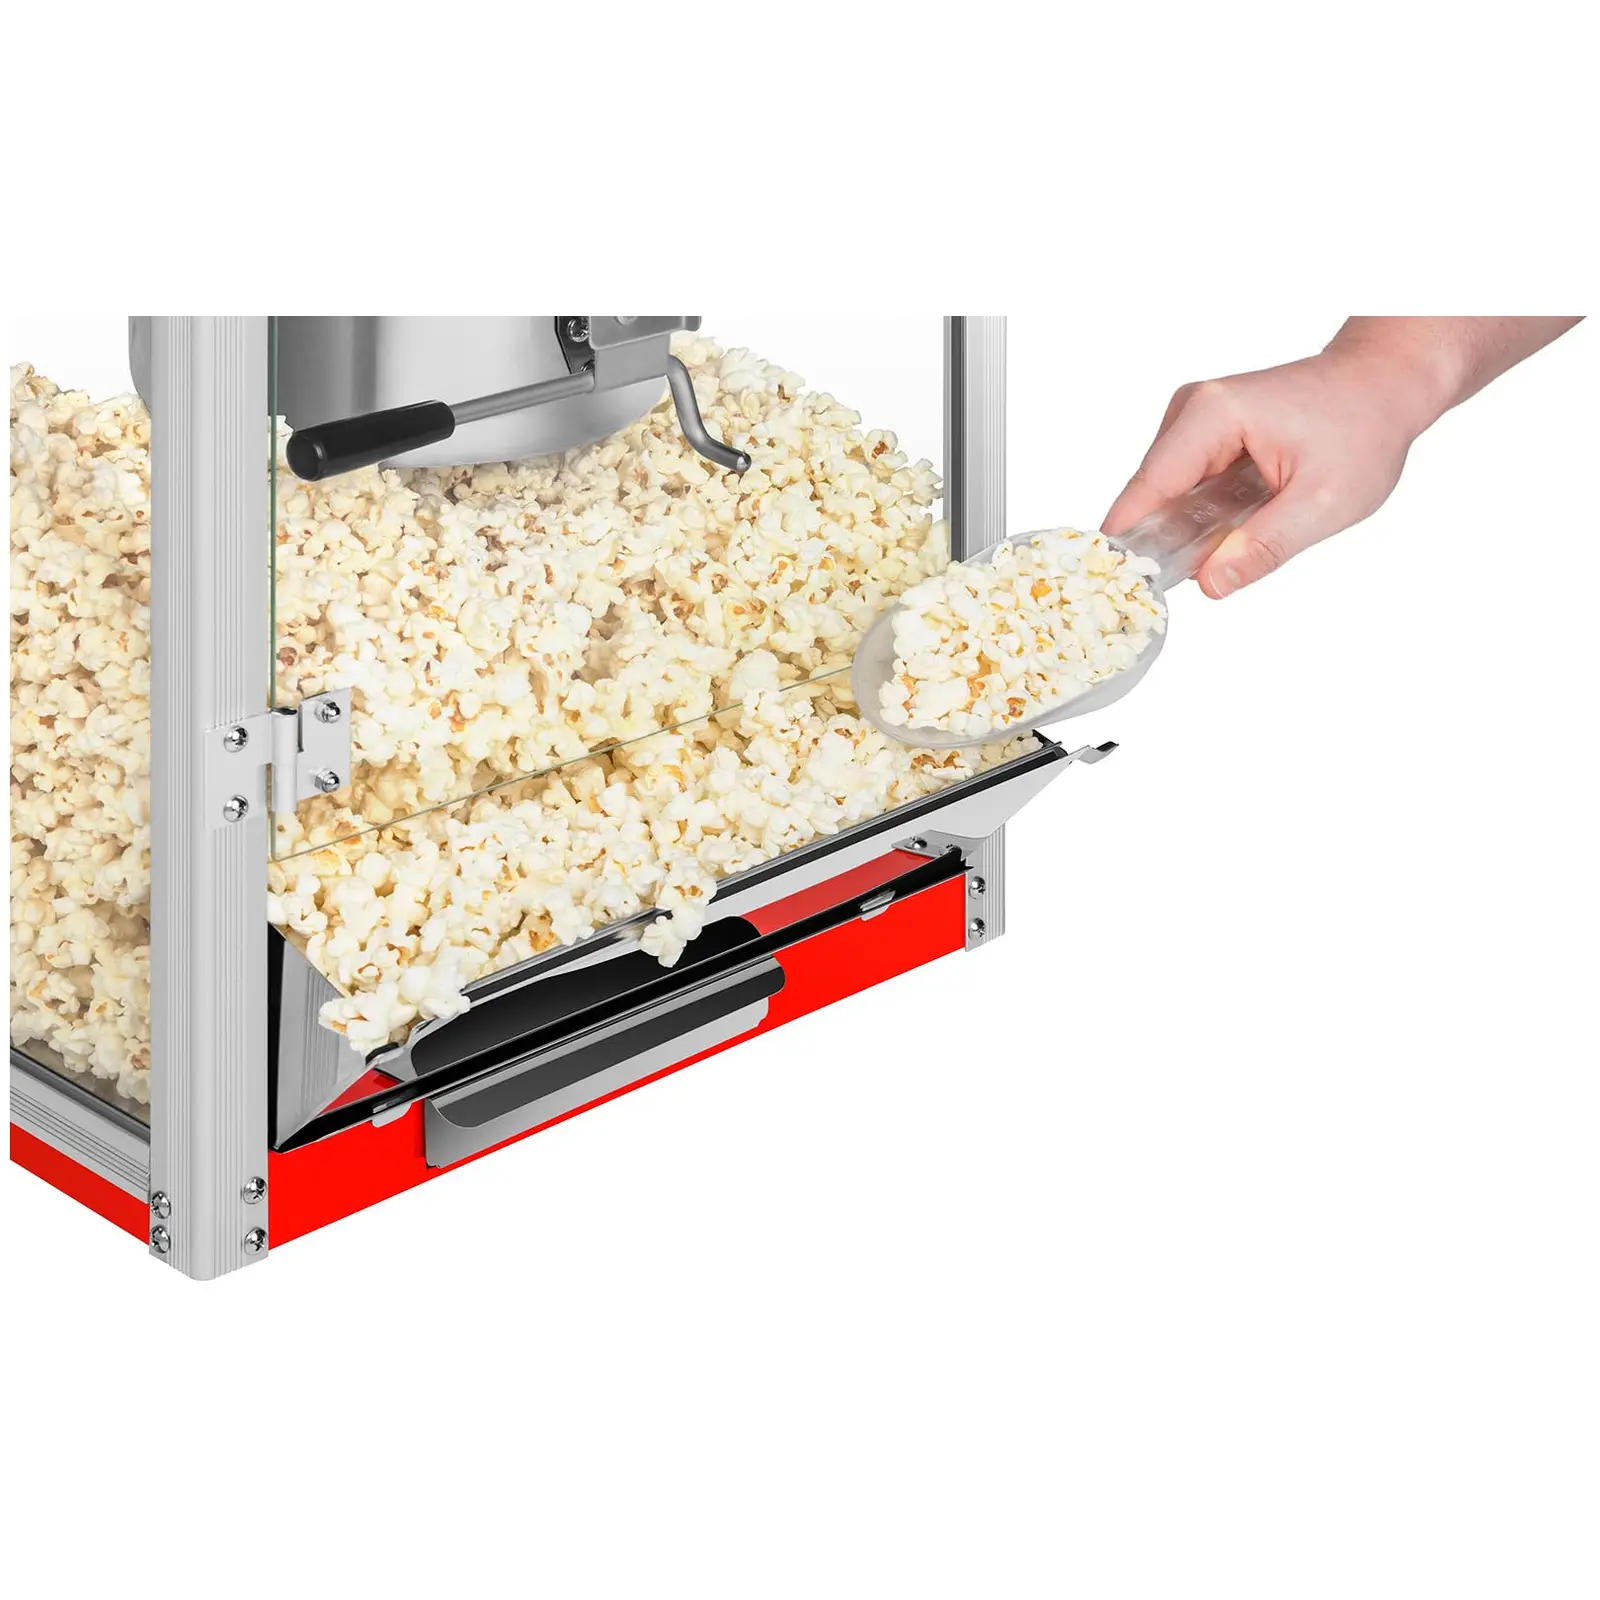 Stroj na popcorn - červený – 8 oz